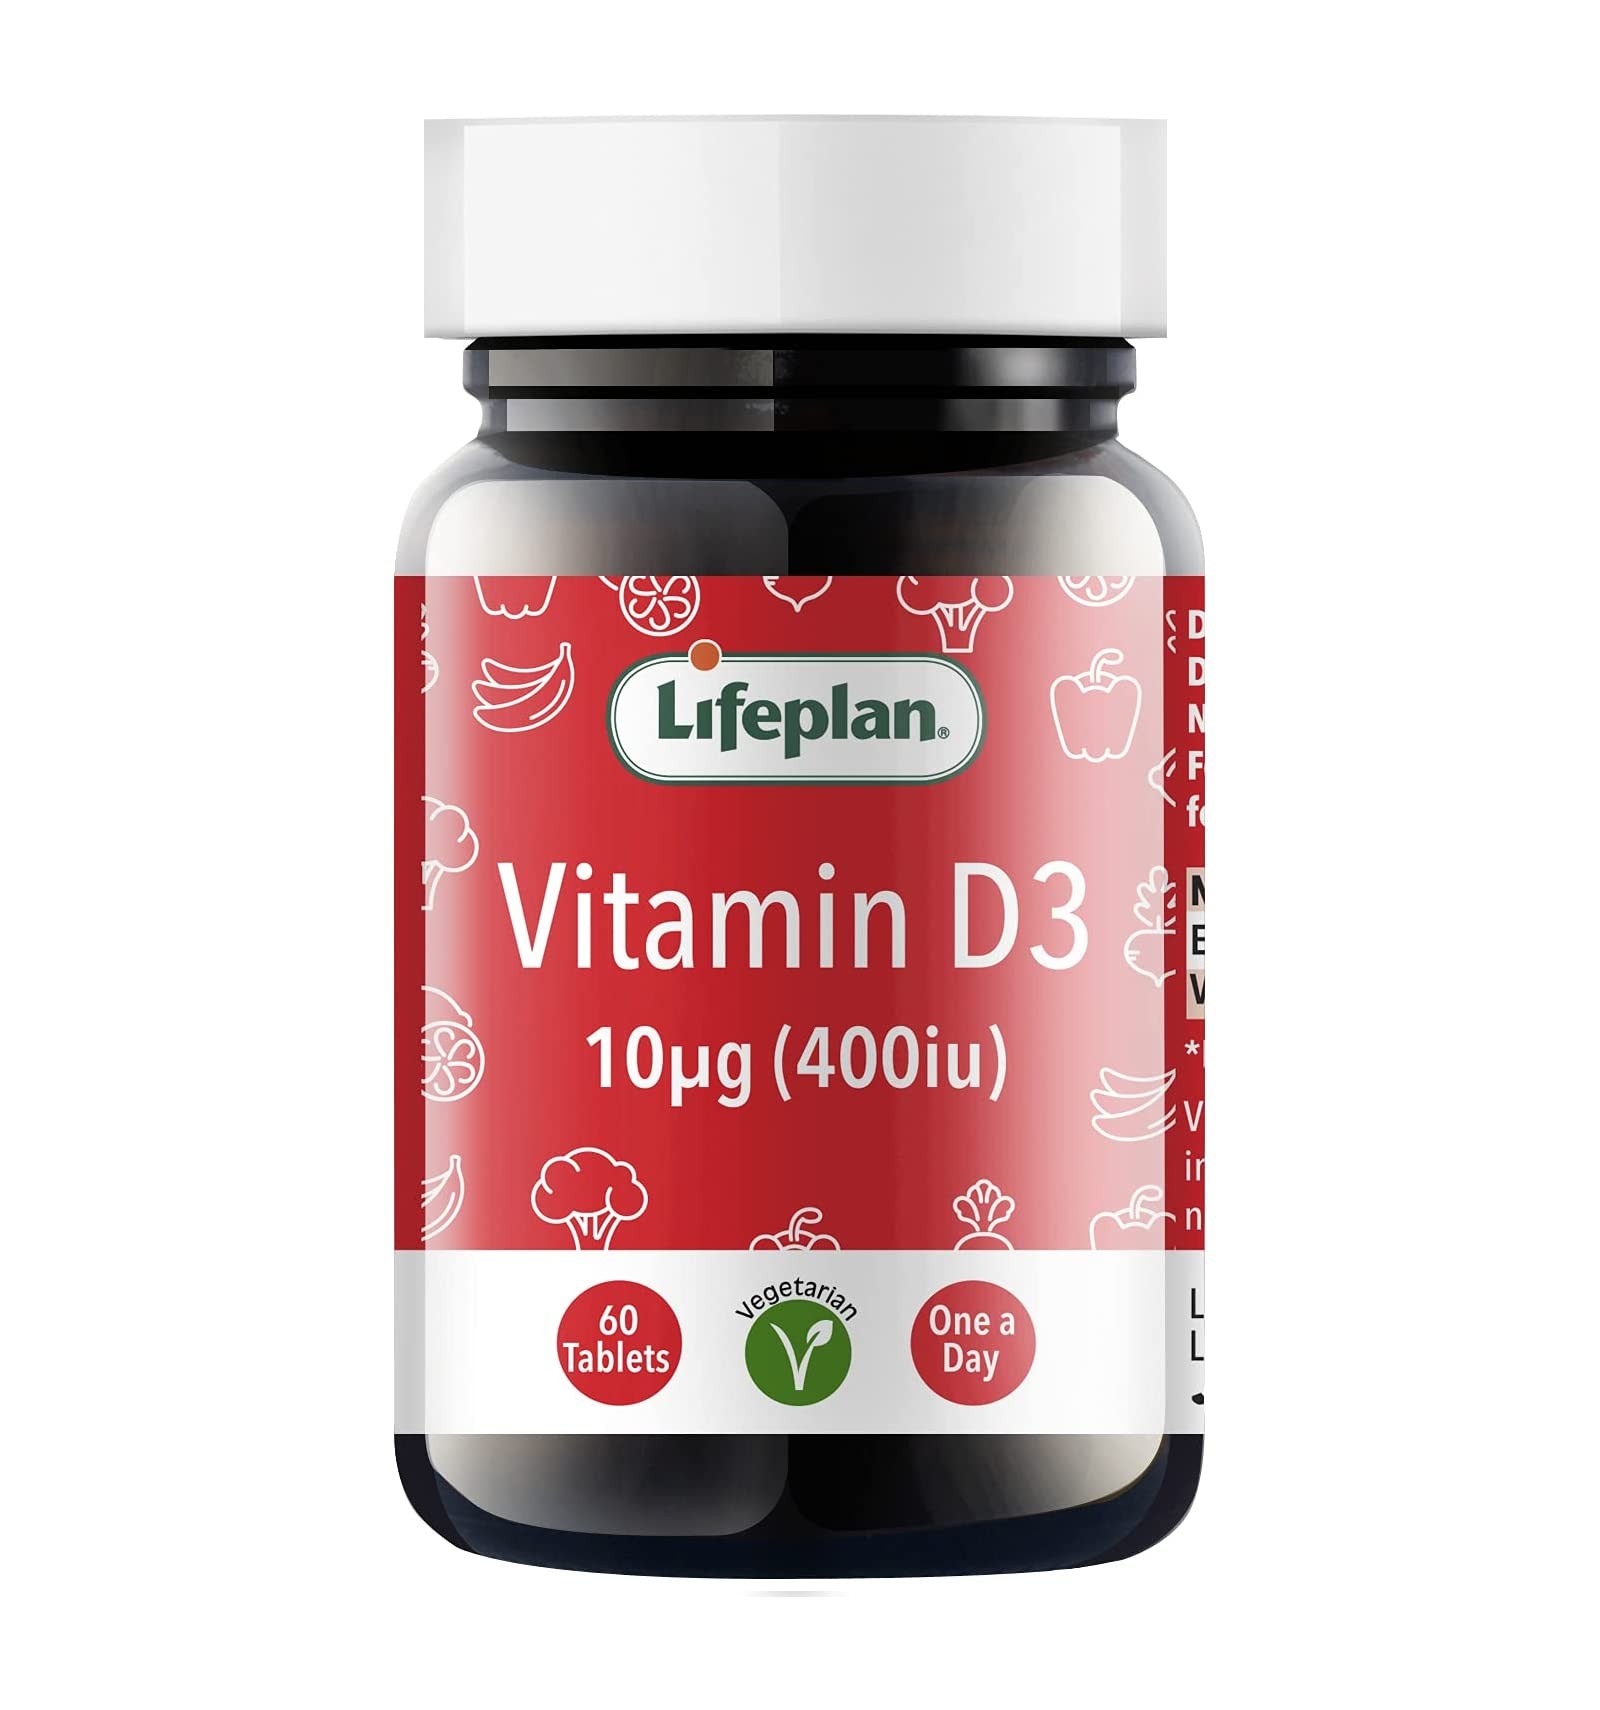 LIFEPLAN Vitamin D3 400IU (10UG) 60TAB